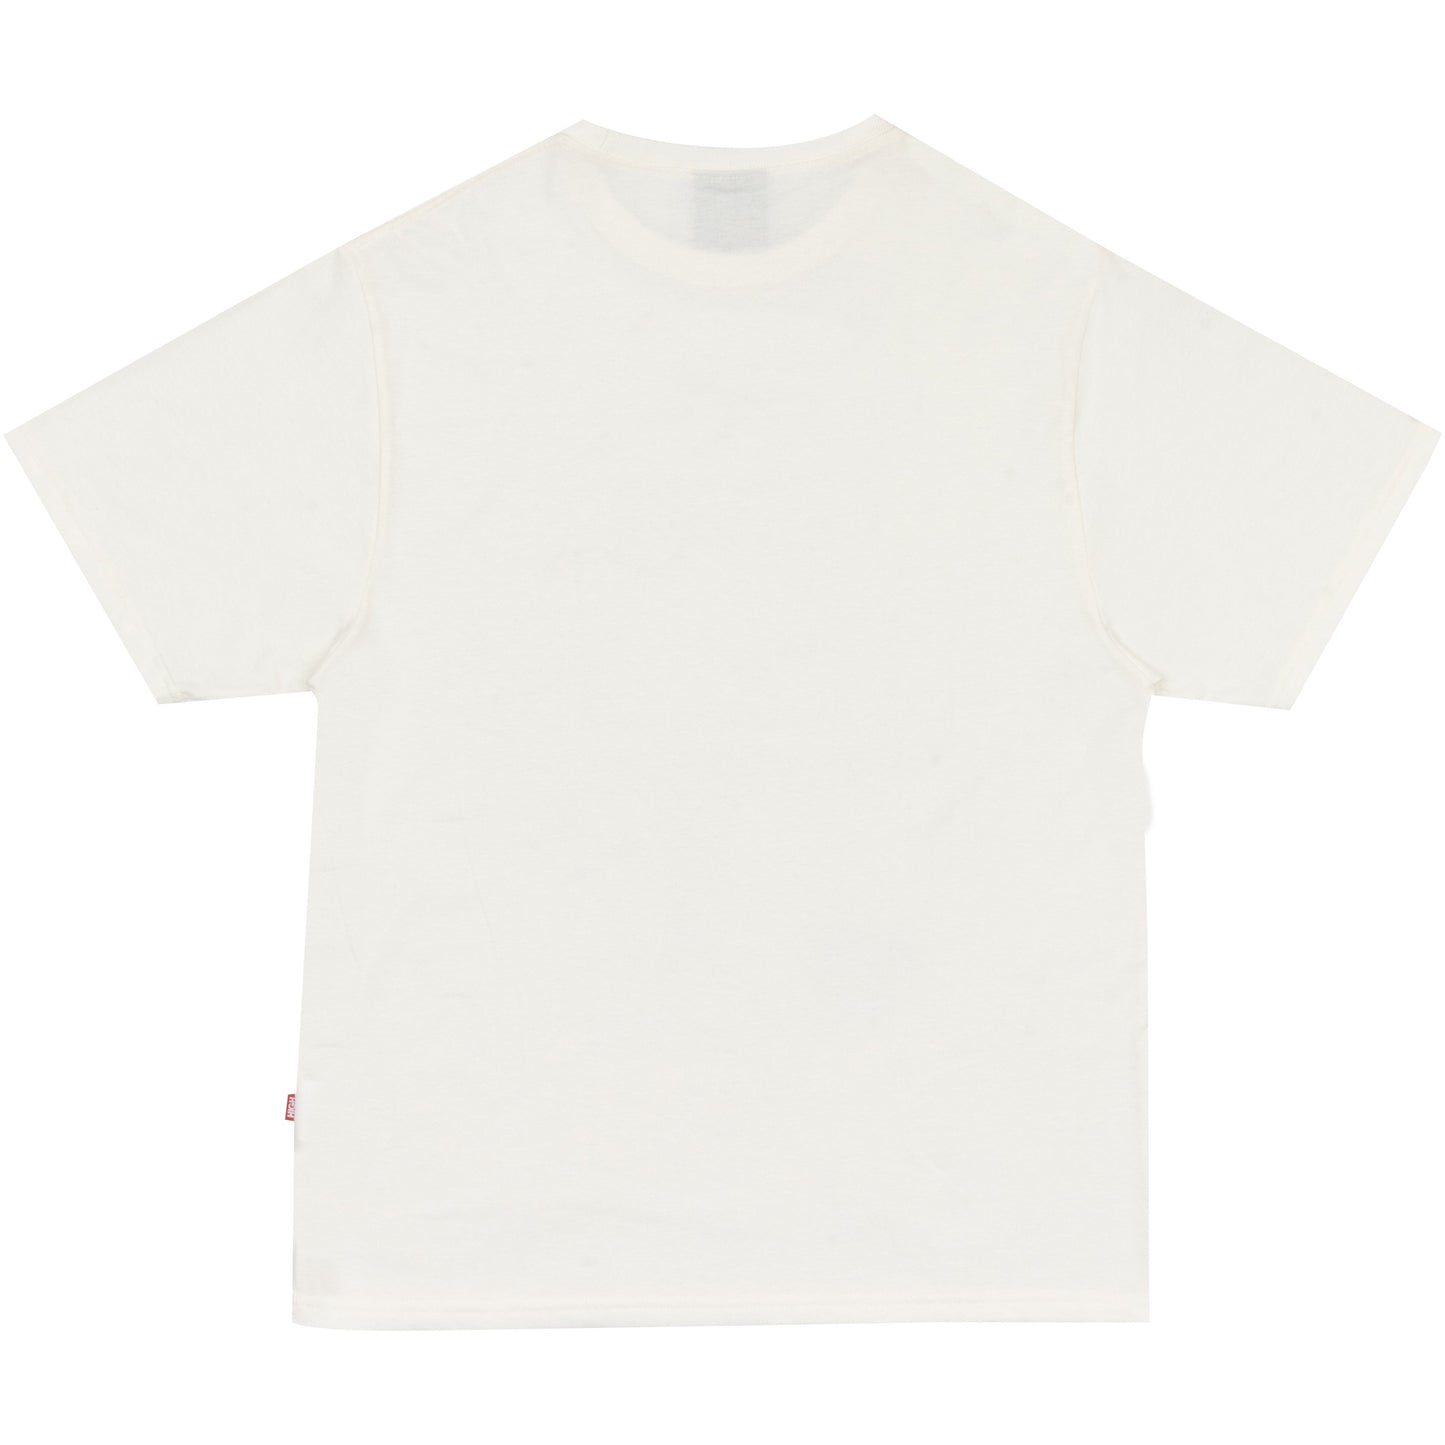 HIGH - Camiseta Thriatlon "White" - THE GAME